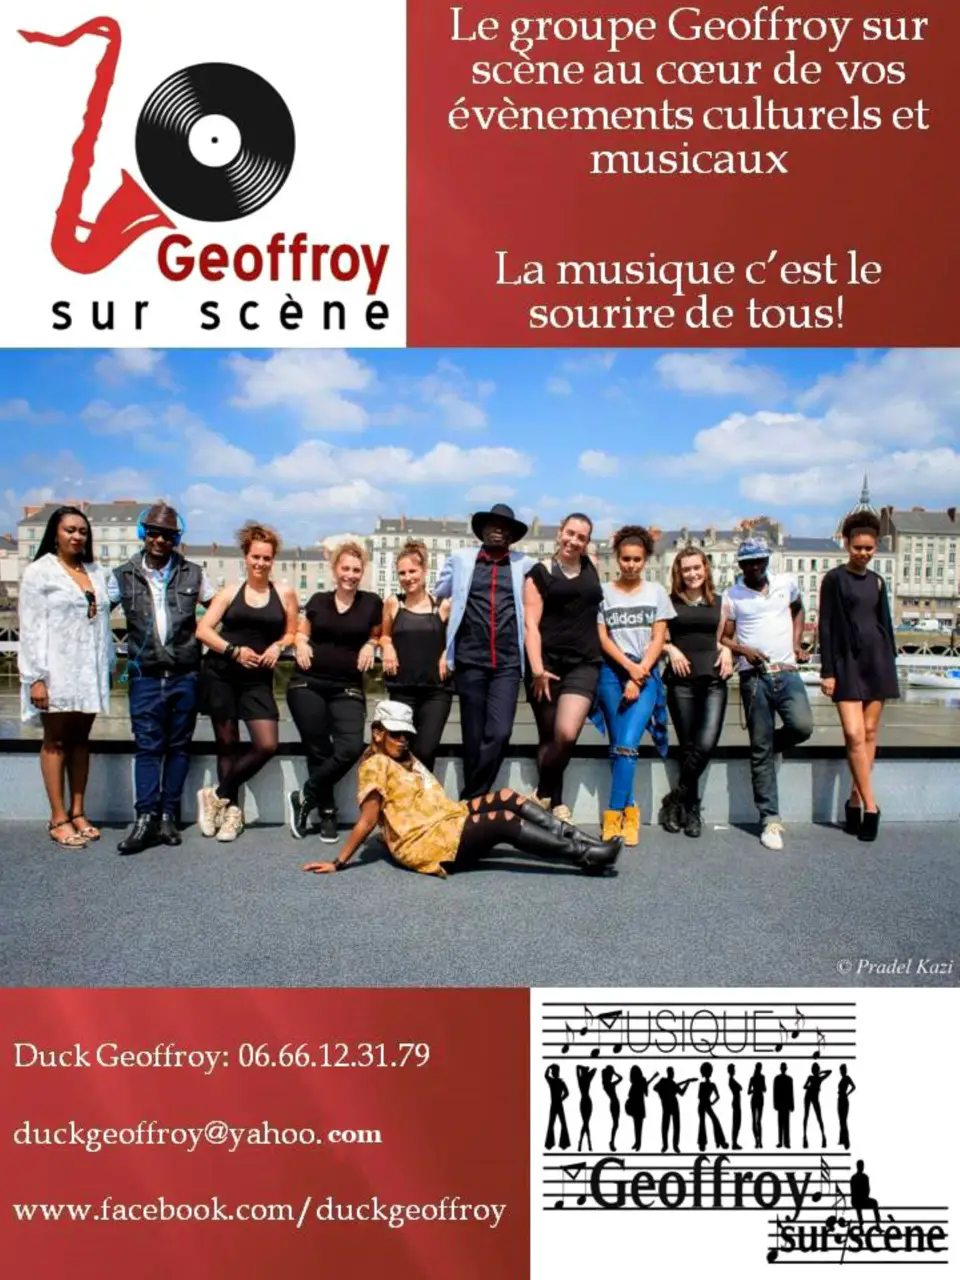 Musique : L'artiste nantais Duck Geoffroy poursuit une carrière mélangeant folklore et World music